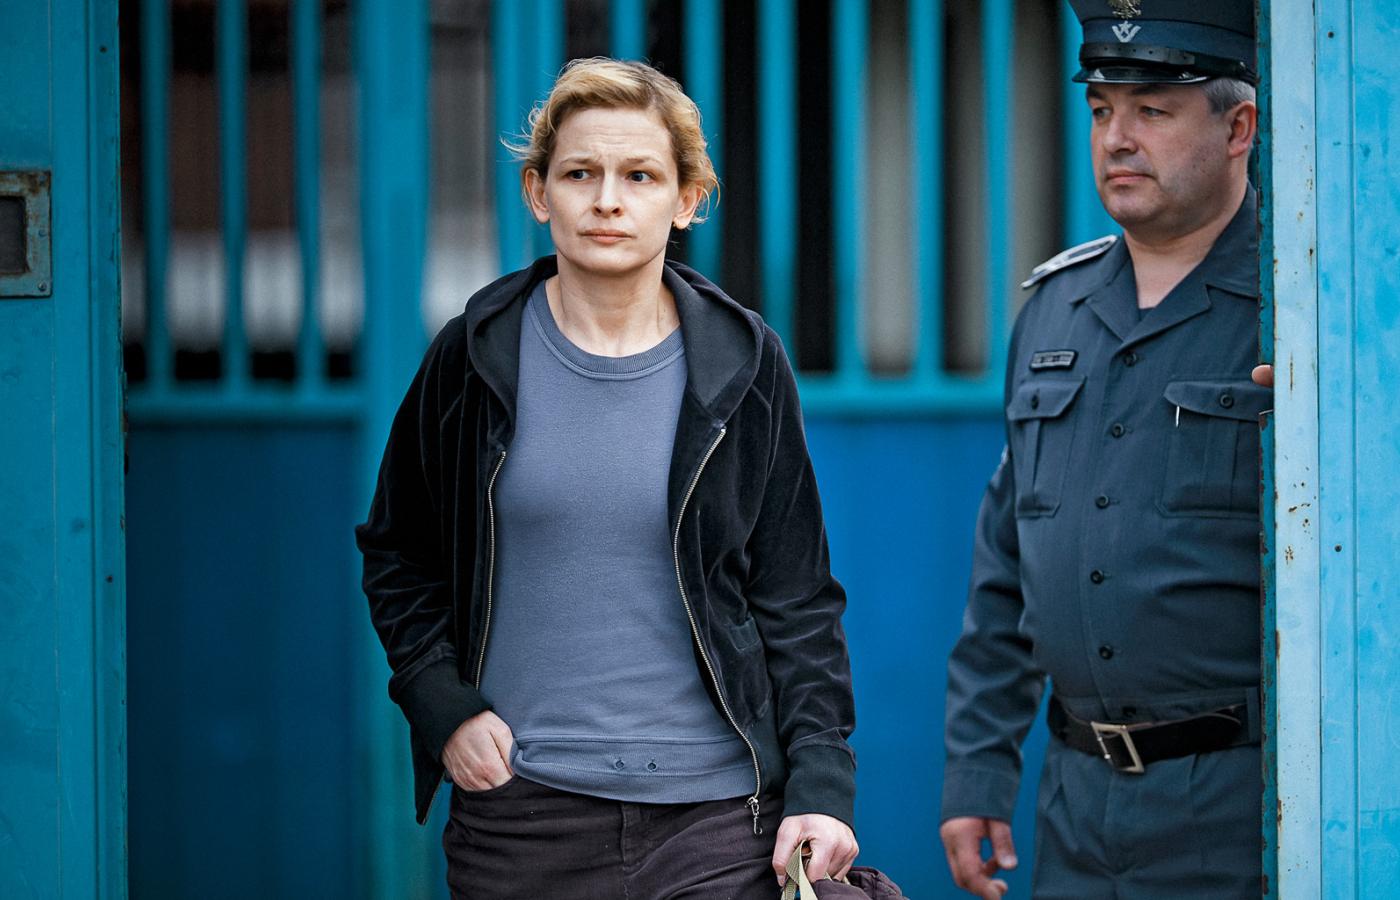 W serialu „Głęboka woda” akcja toczy się w Ośrodku Pomocy Społecznej. Na zdj. Dominika Ostałowska jako wychodząca z więzienia Wioletta.